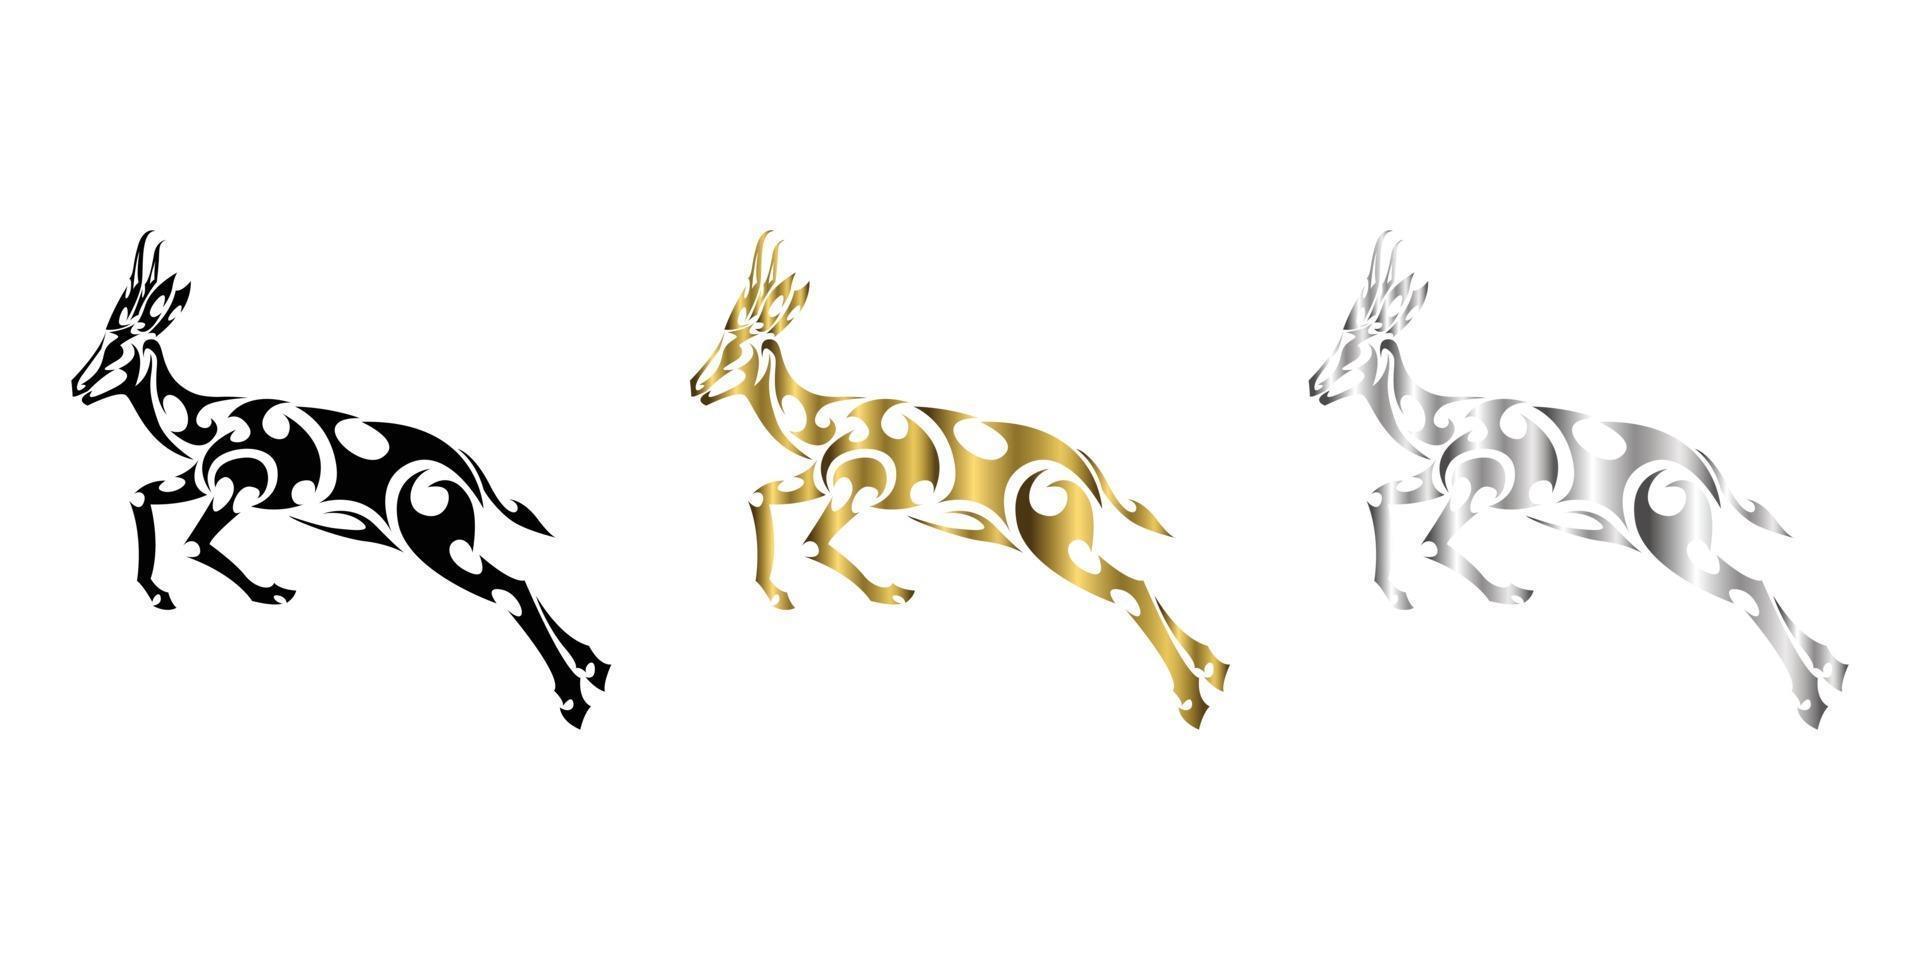 tre colori nero oro argento linea arte vettore di springbok sta saltando adatto per l'uso come decorazione o logo